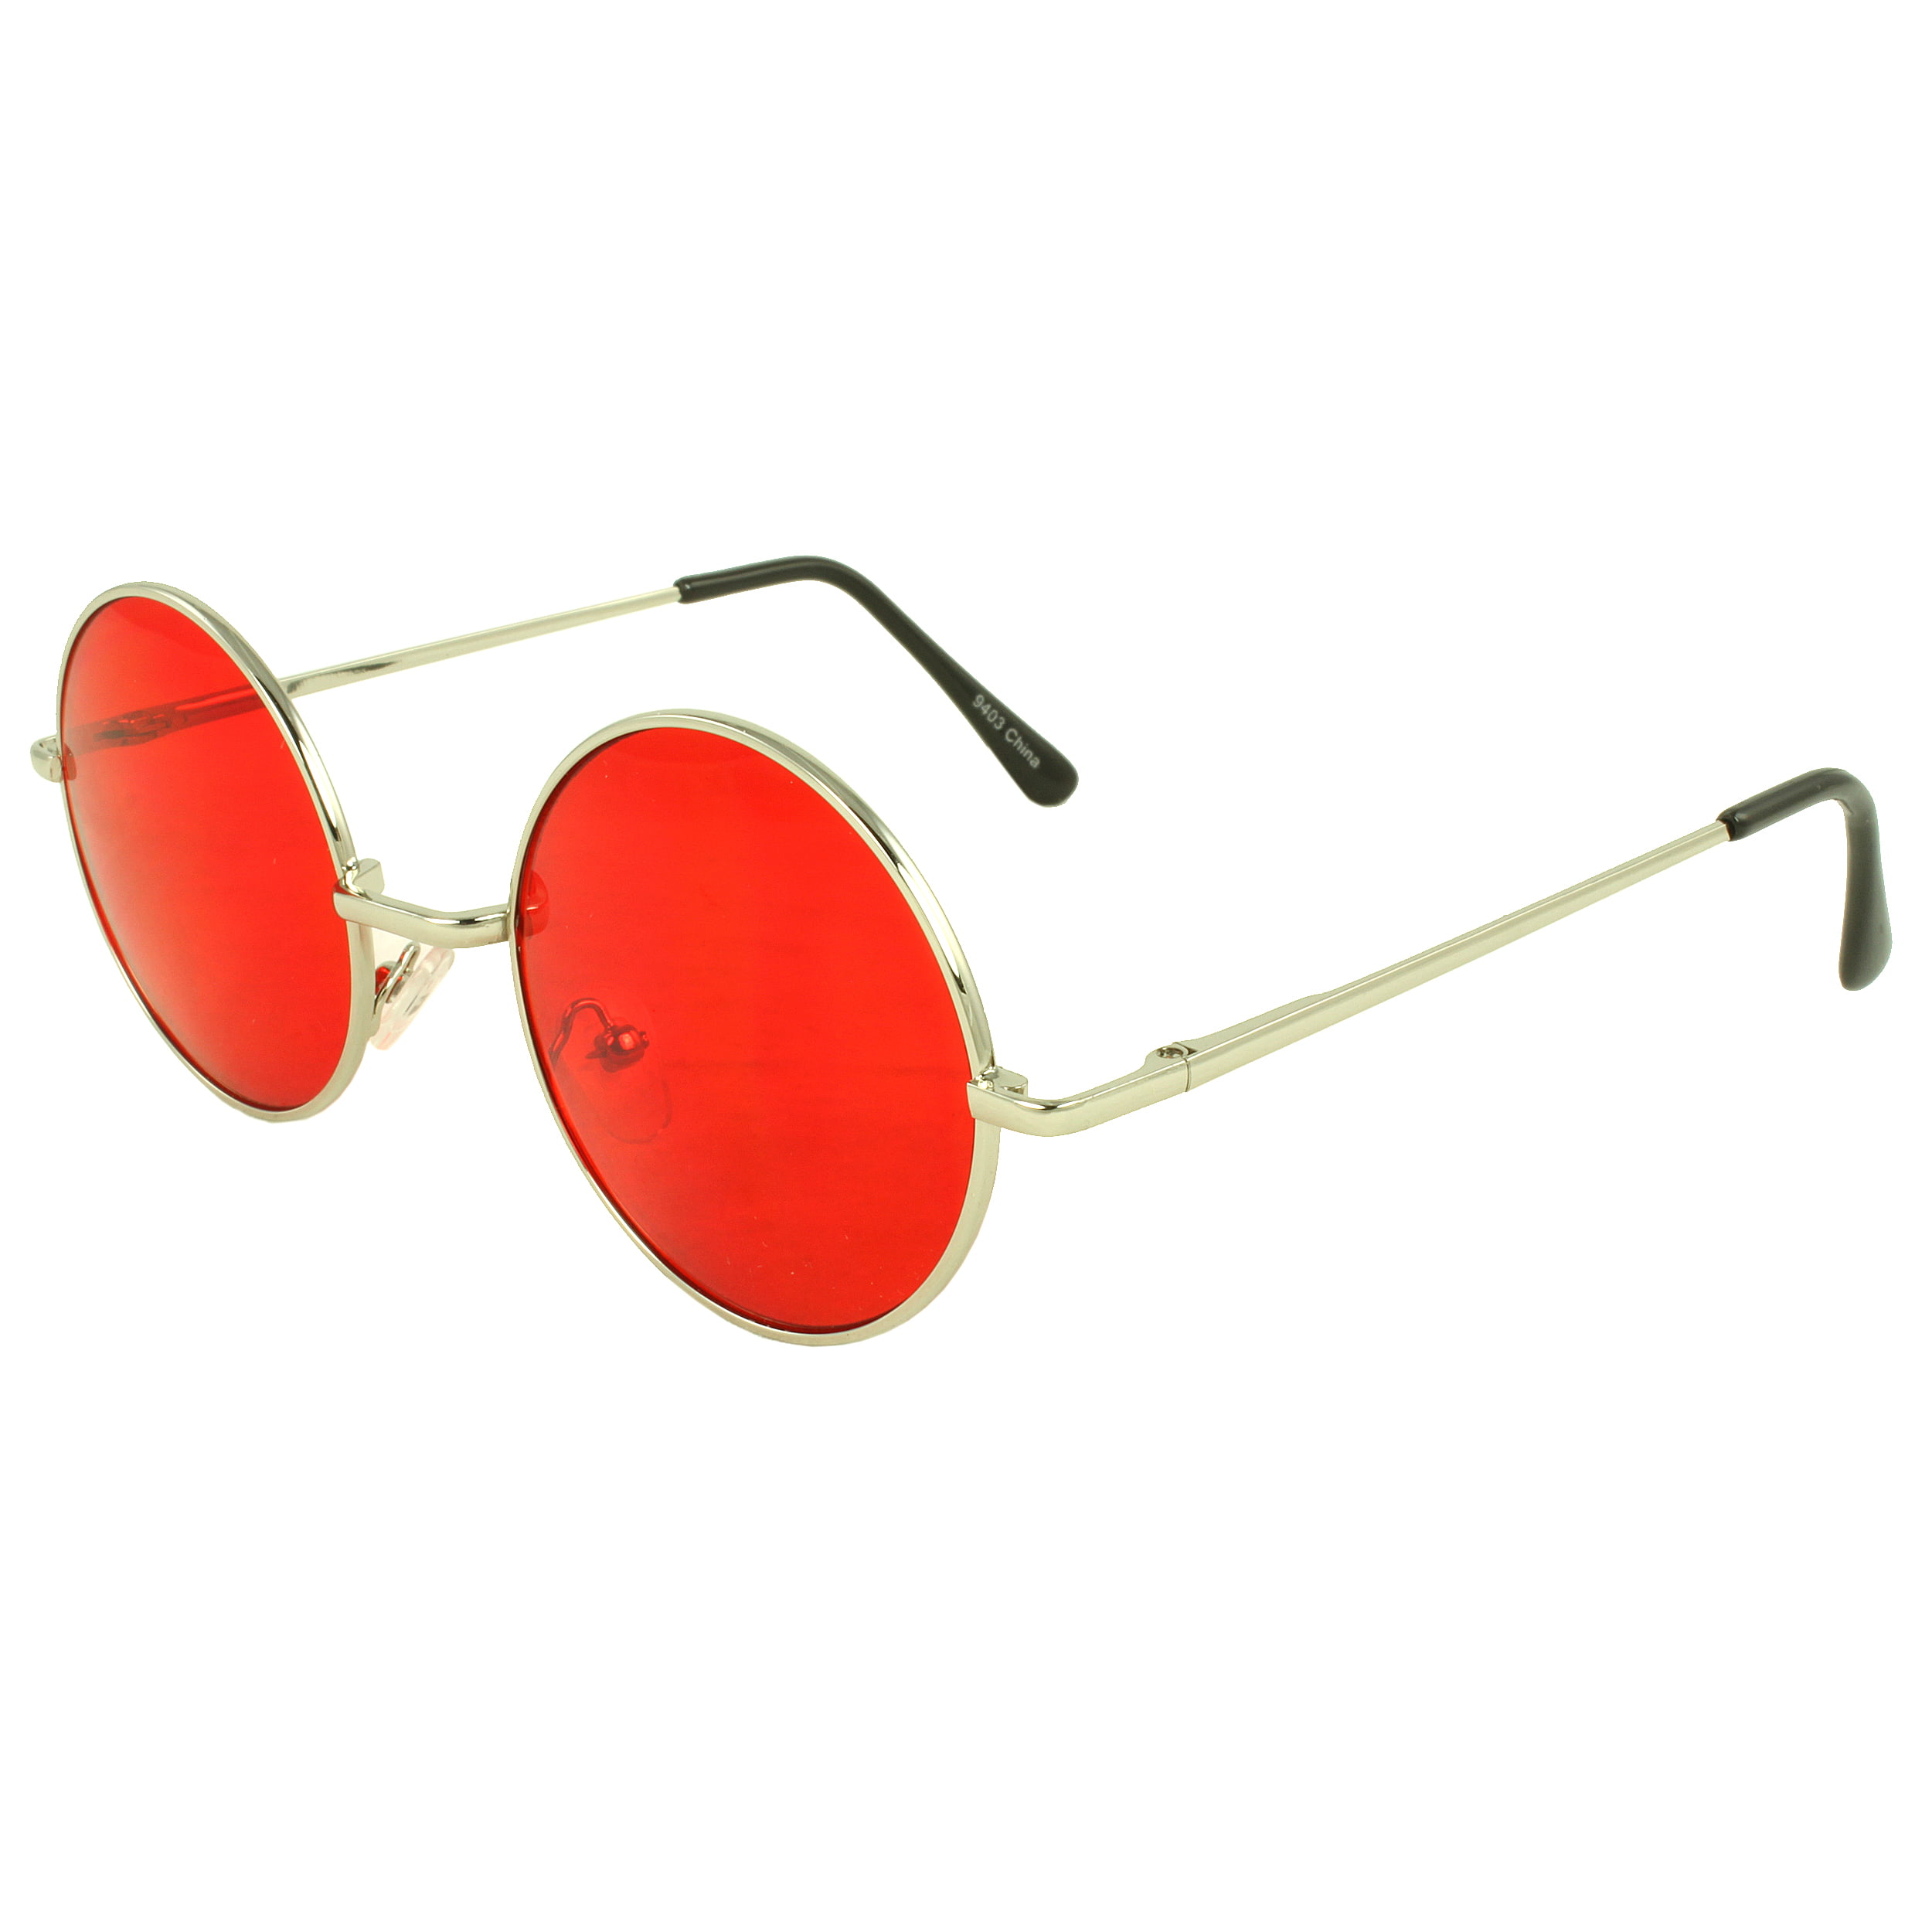 MLC Retro Round Sunglasses in Red - Walmart.com